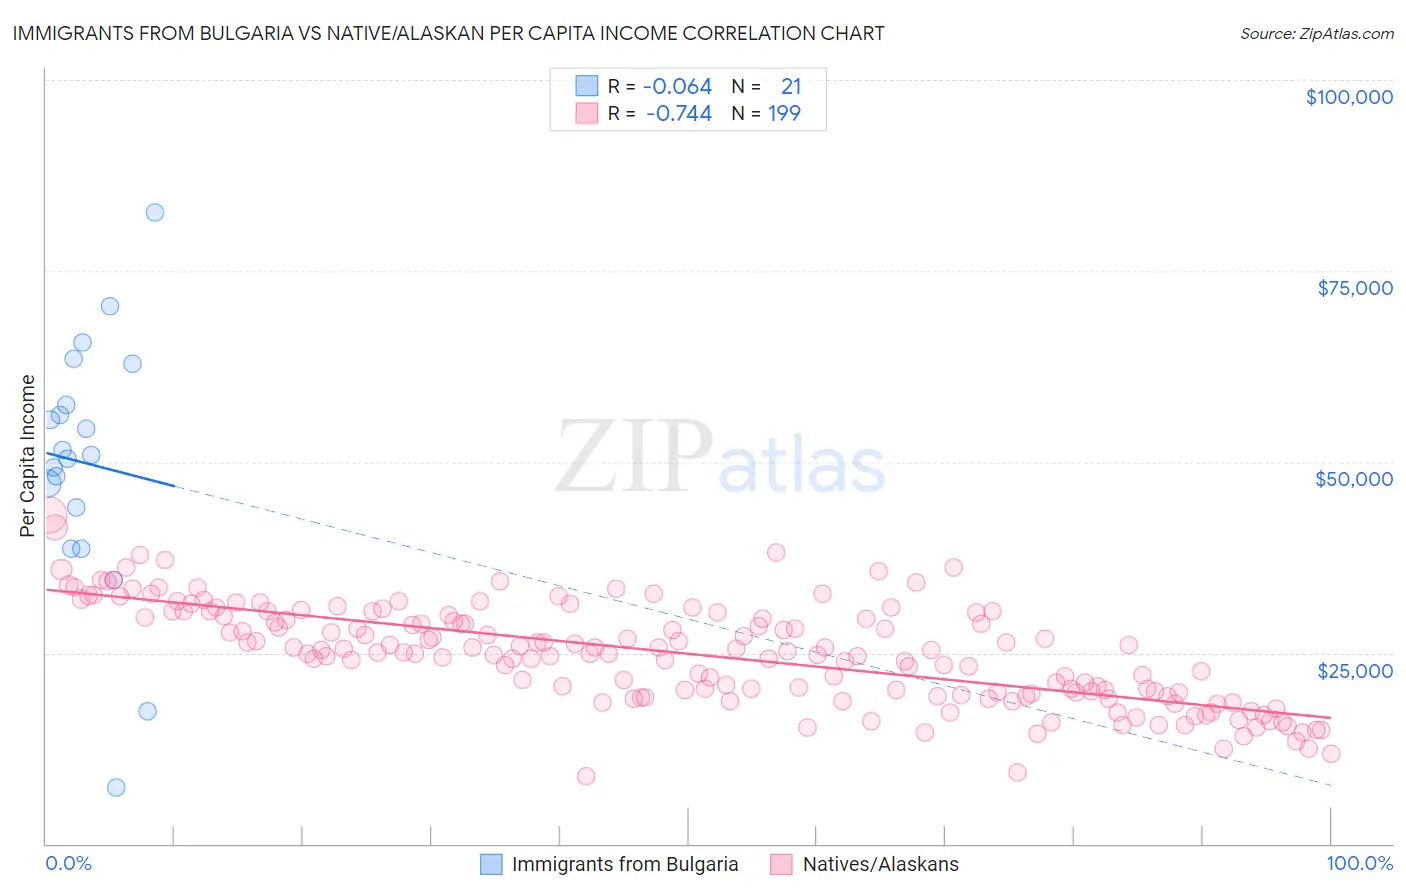 Immigrants from Bulgaria vs Native/Alaskan Per Capita Income